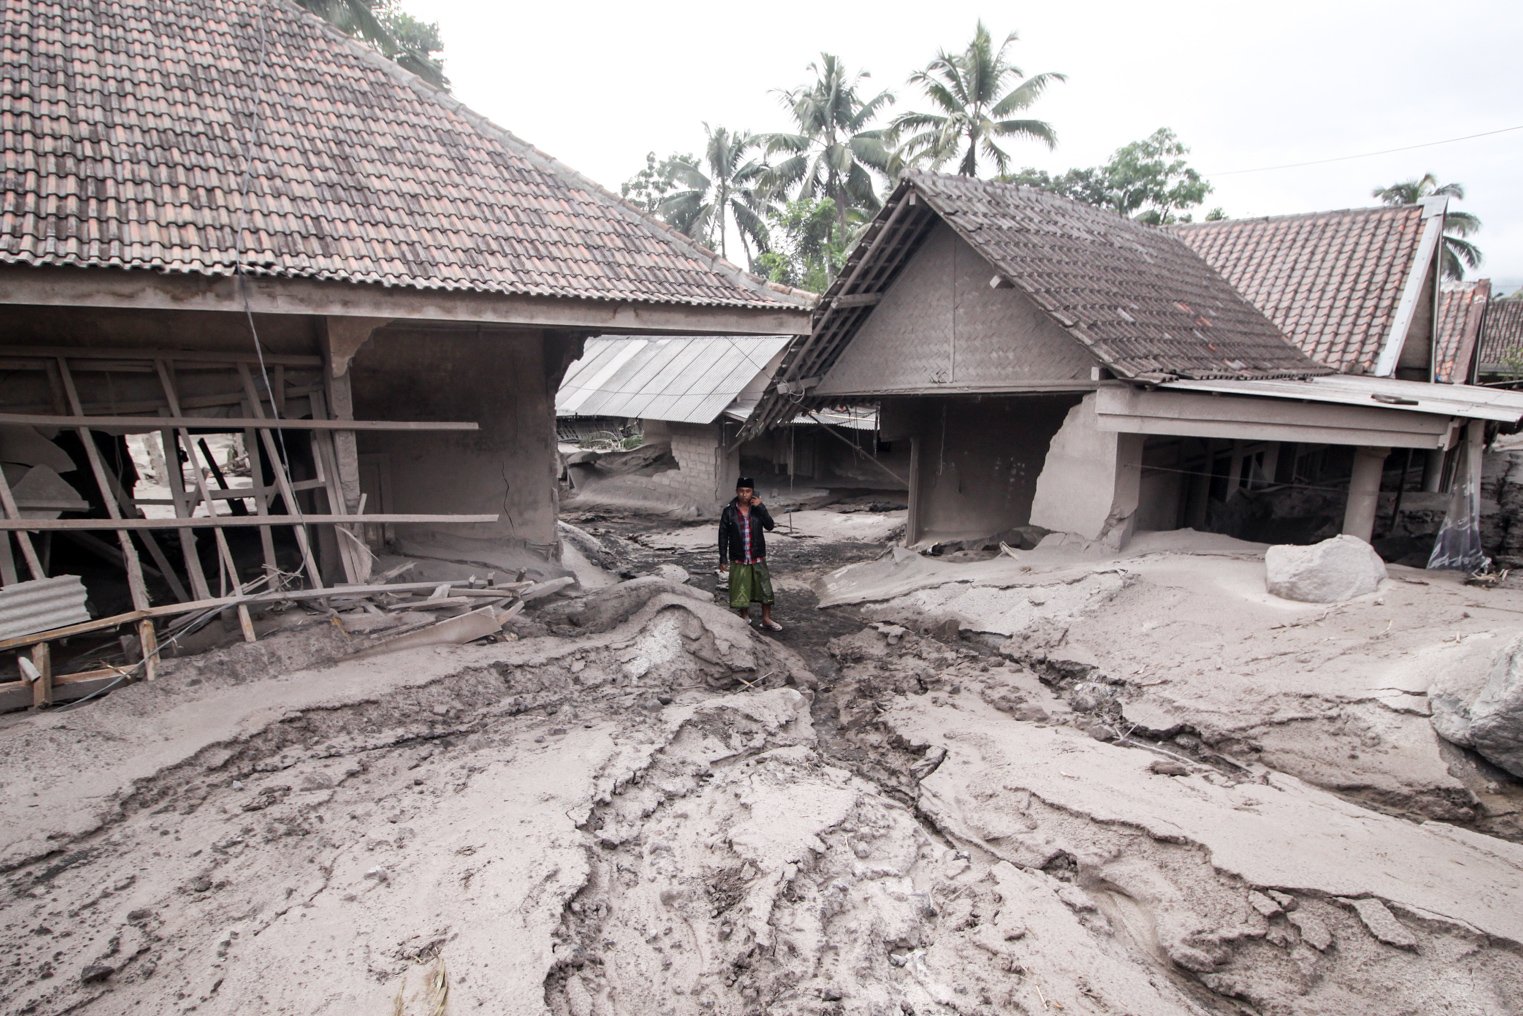 Warga melintas di rumah yang rusak akibat abu vulkanik letusan Gunung Semeru di Desa Sumber Wuluh, Lumajang, Jawa Timur, Minggu (5/12/2021). Akibat letusan Gunung Semeru tersebut sedikitnya puluhan rumah rusak. ANTARA FOTO/Umarul Faruq/pras.